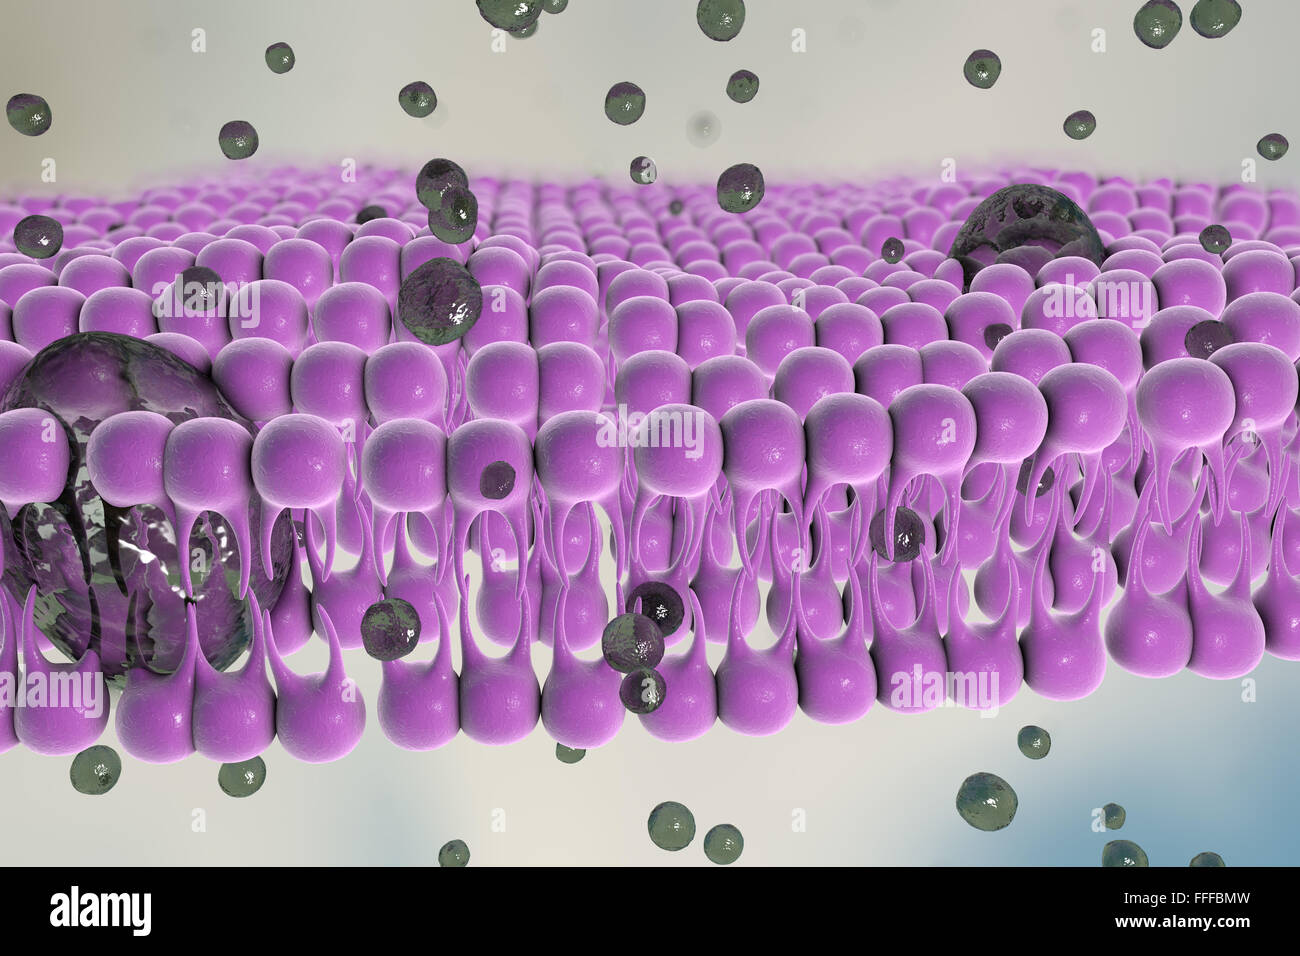 Membrana plasmática. Ilustración de la estructura de la membrana plasmática que rodea las células. La membrana es una de bilayer Foto de stock